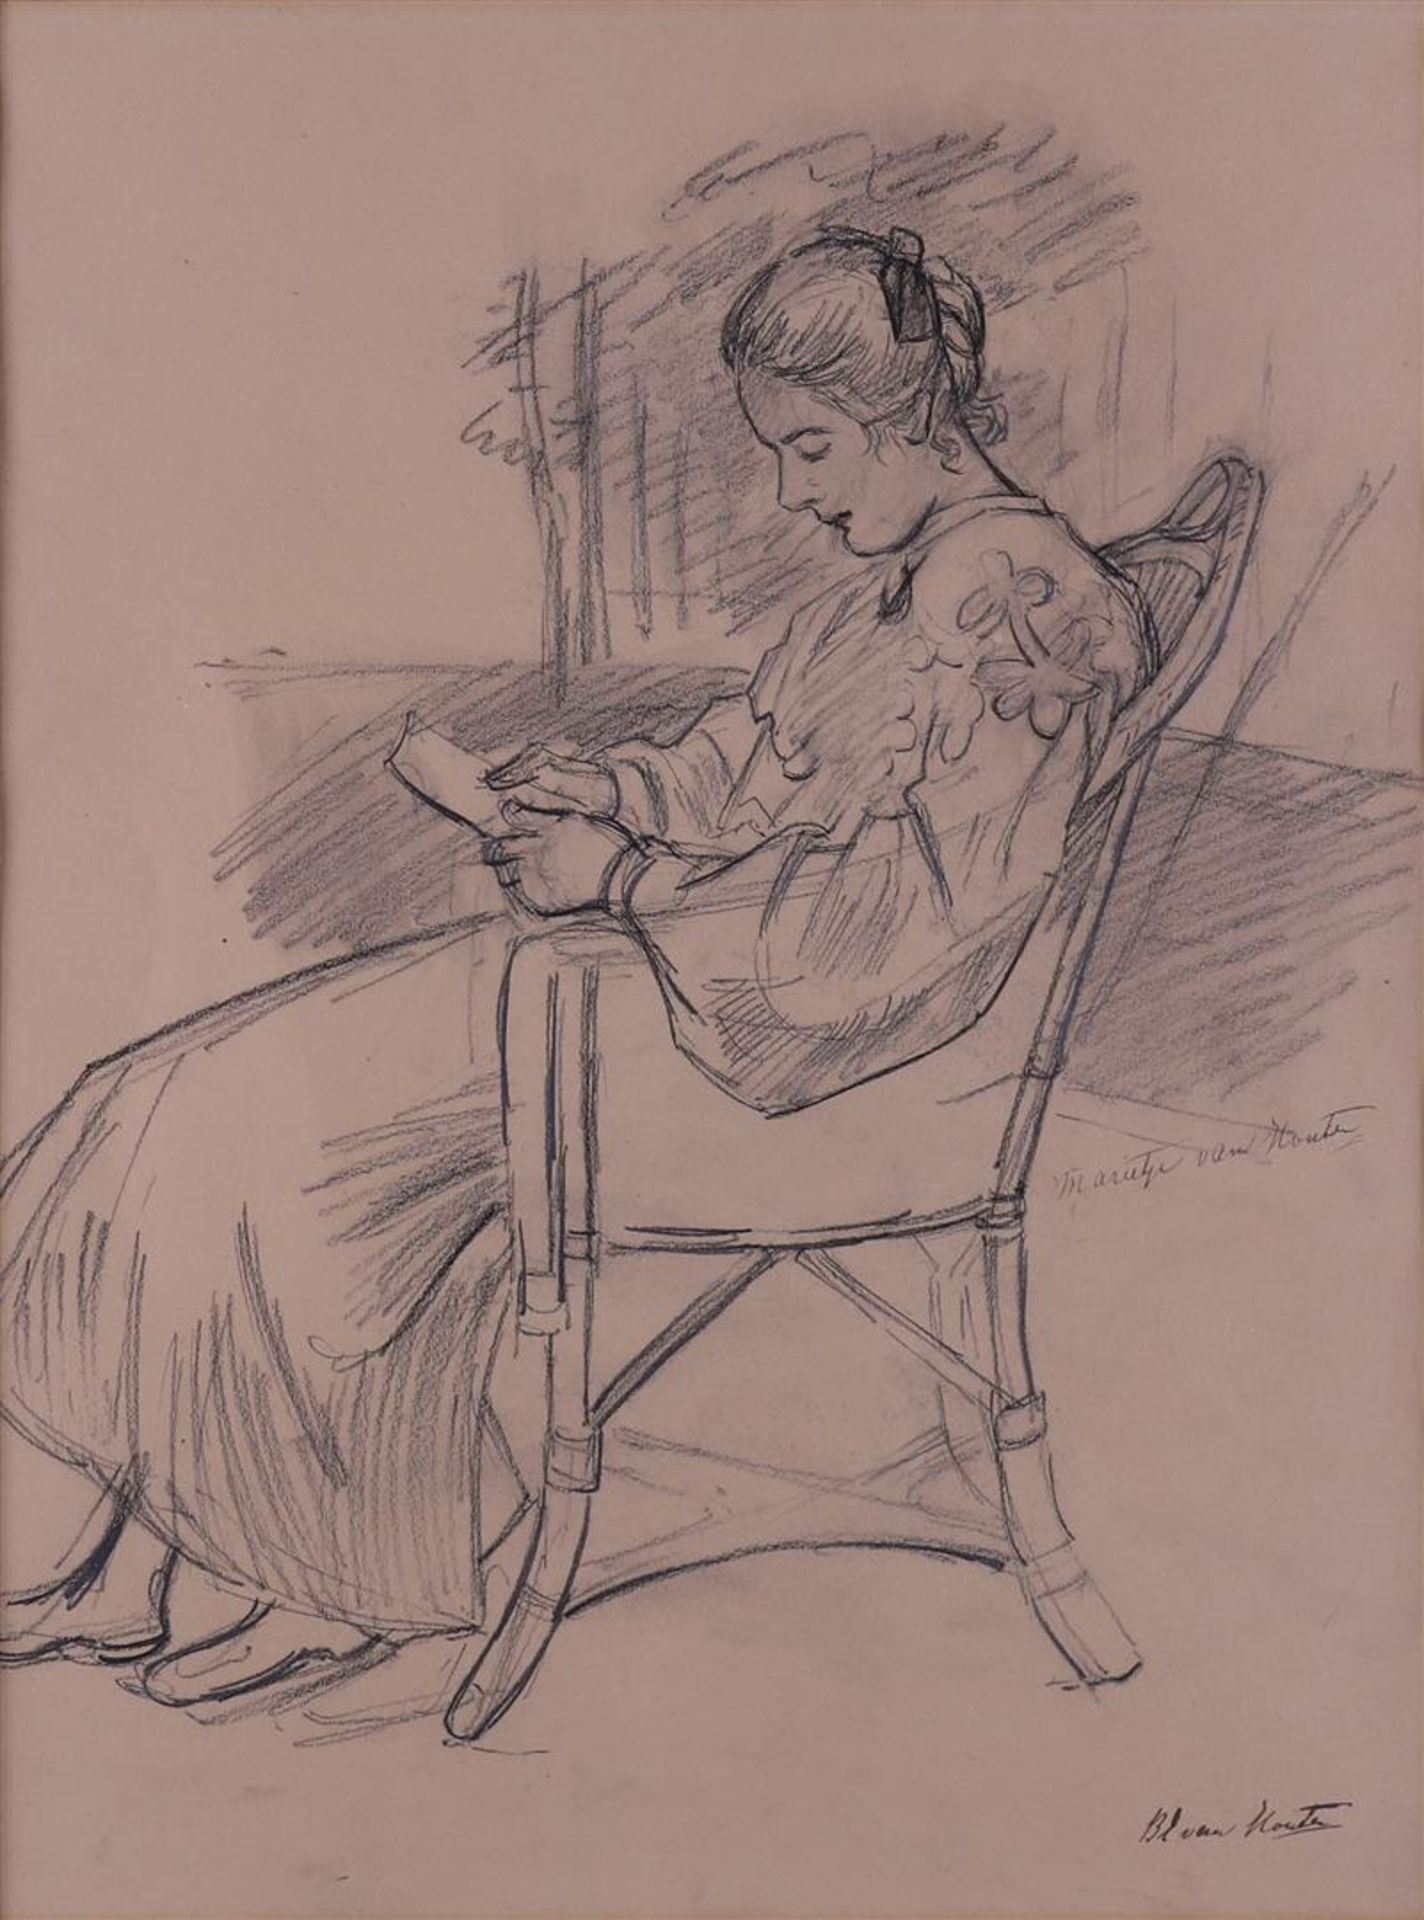 Houten van, Barbara Elisabeth (1862 - 1950) 'Marieke van Houten' - Bild 2 aus 3